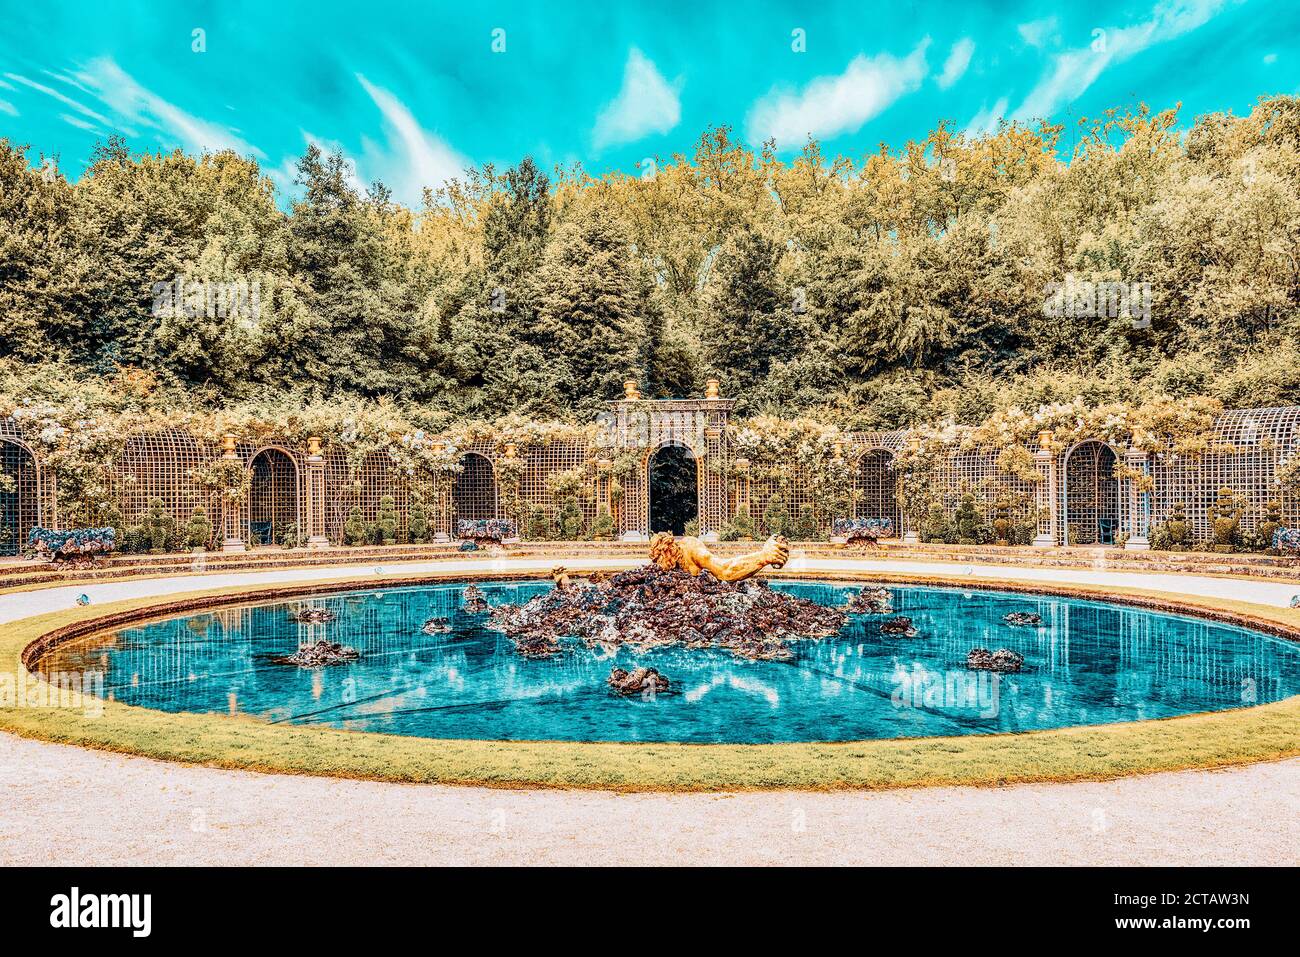 VERSAILLES, FRANCE - Juillet 02, 2016 : Escalade fontaine dans un magnifique parc en Europe - Versailles. France Banque D'Images